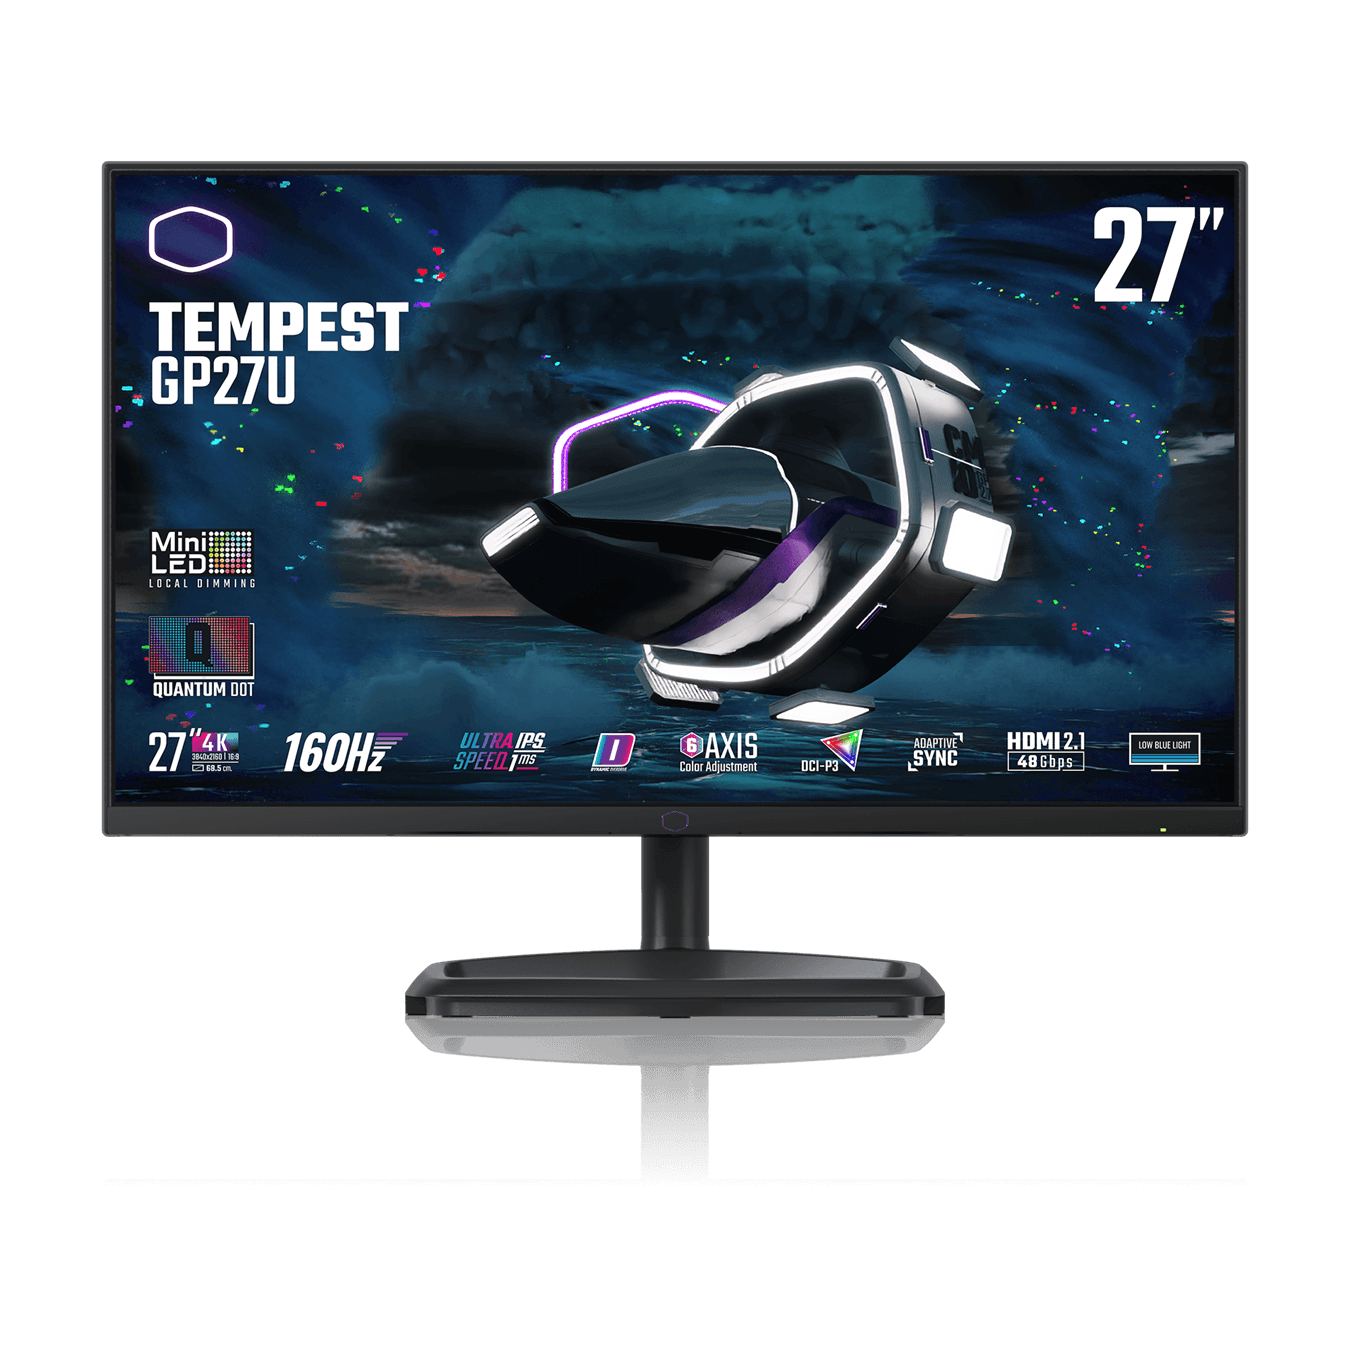 TEMPEST GP27U 27" 4K MINI-LED 160Hz Monitor